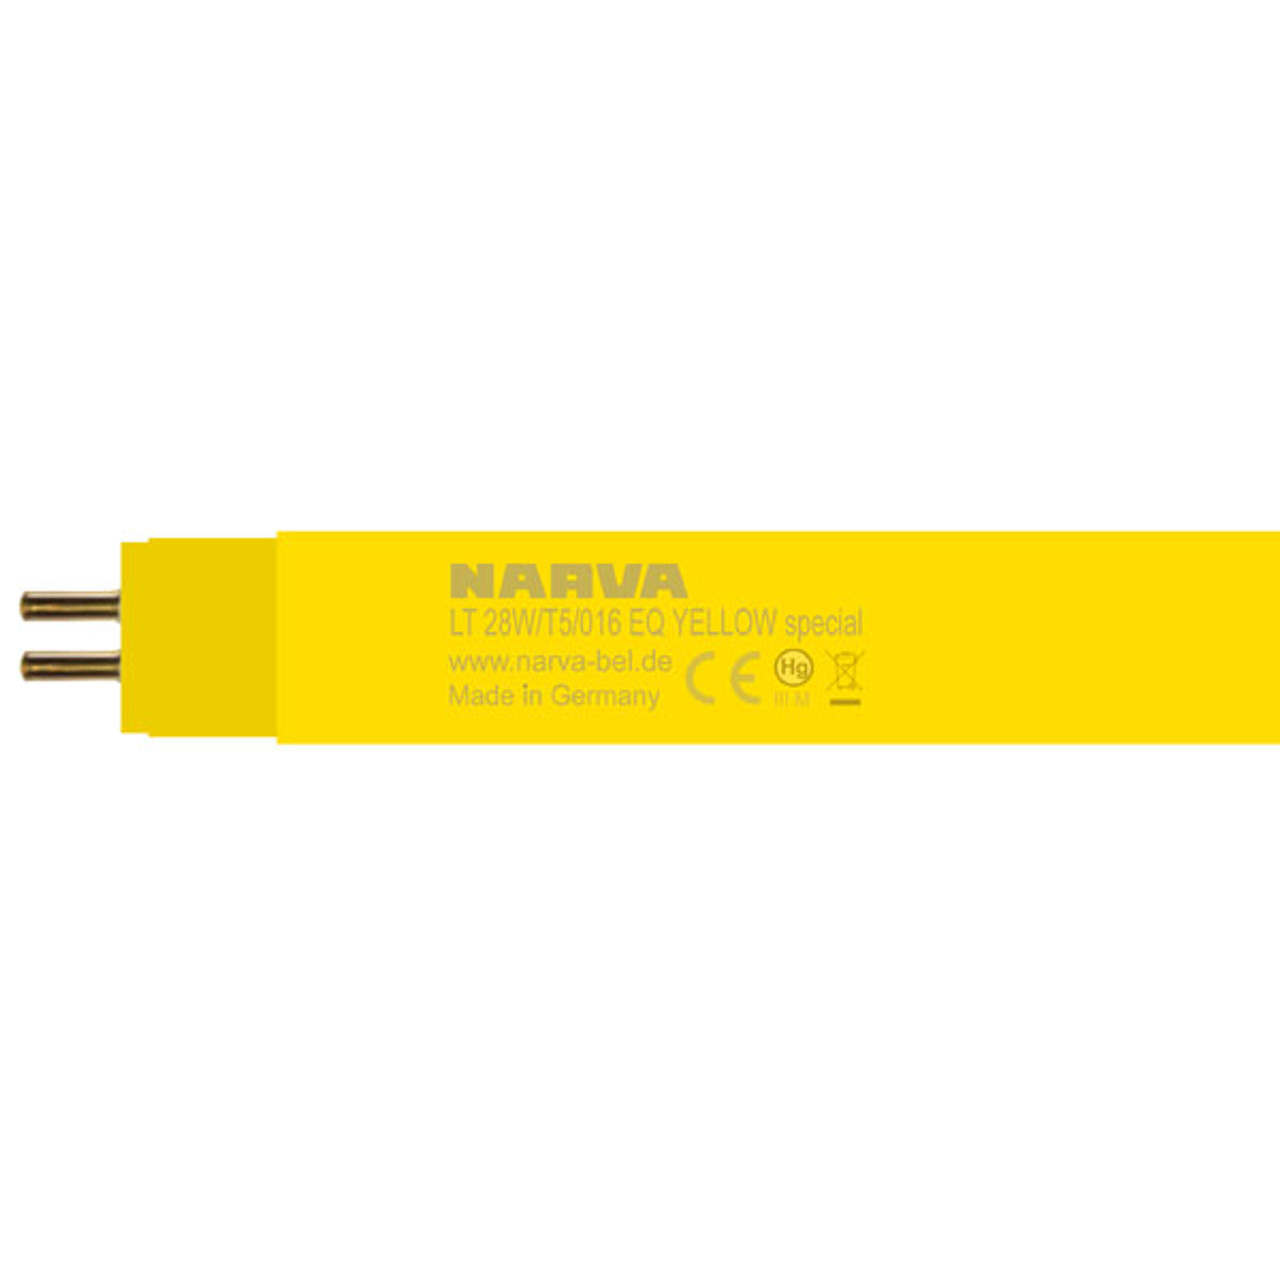 Narva LT 28w T5 EQ/YESP 1149mm T5 Yellow